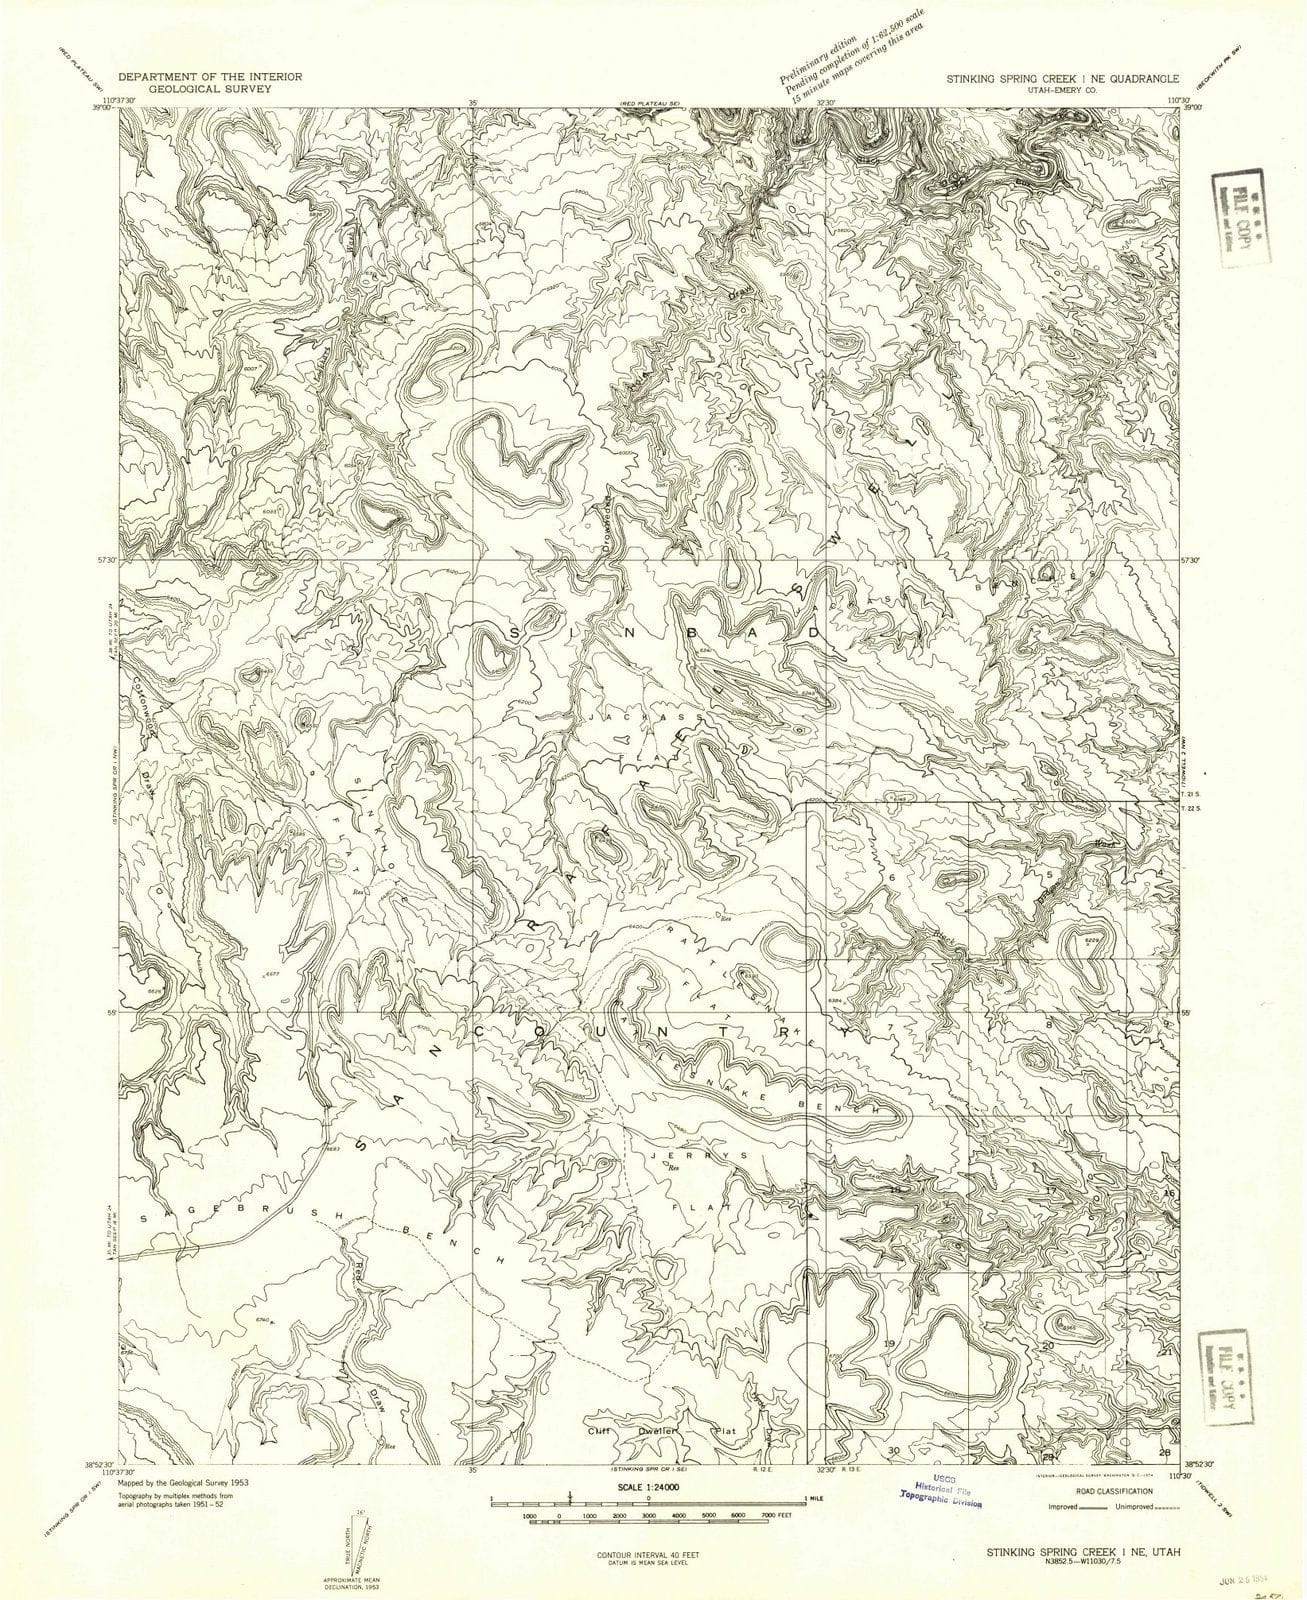 1954 Stinking Spring Creek 1, UT - Utah - USGS Topographic Map